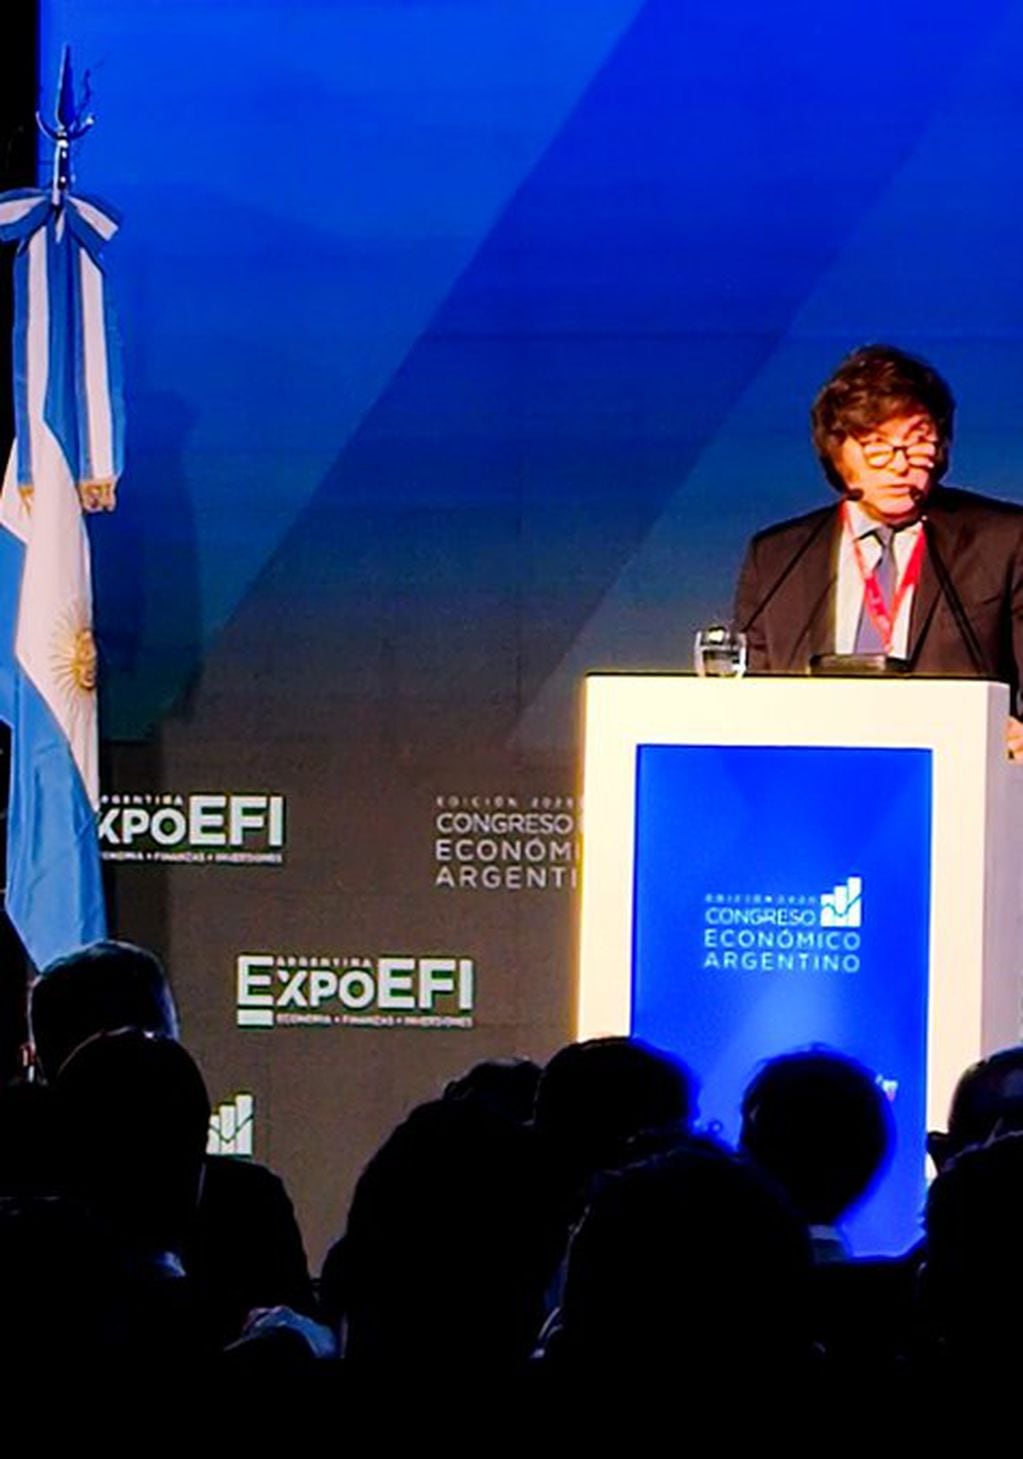 El candidato presidencial de La Libertad Avanza durante su discurso en la Expo EFI, en La Rural. Foto: Twitter / @EleoValentini